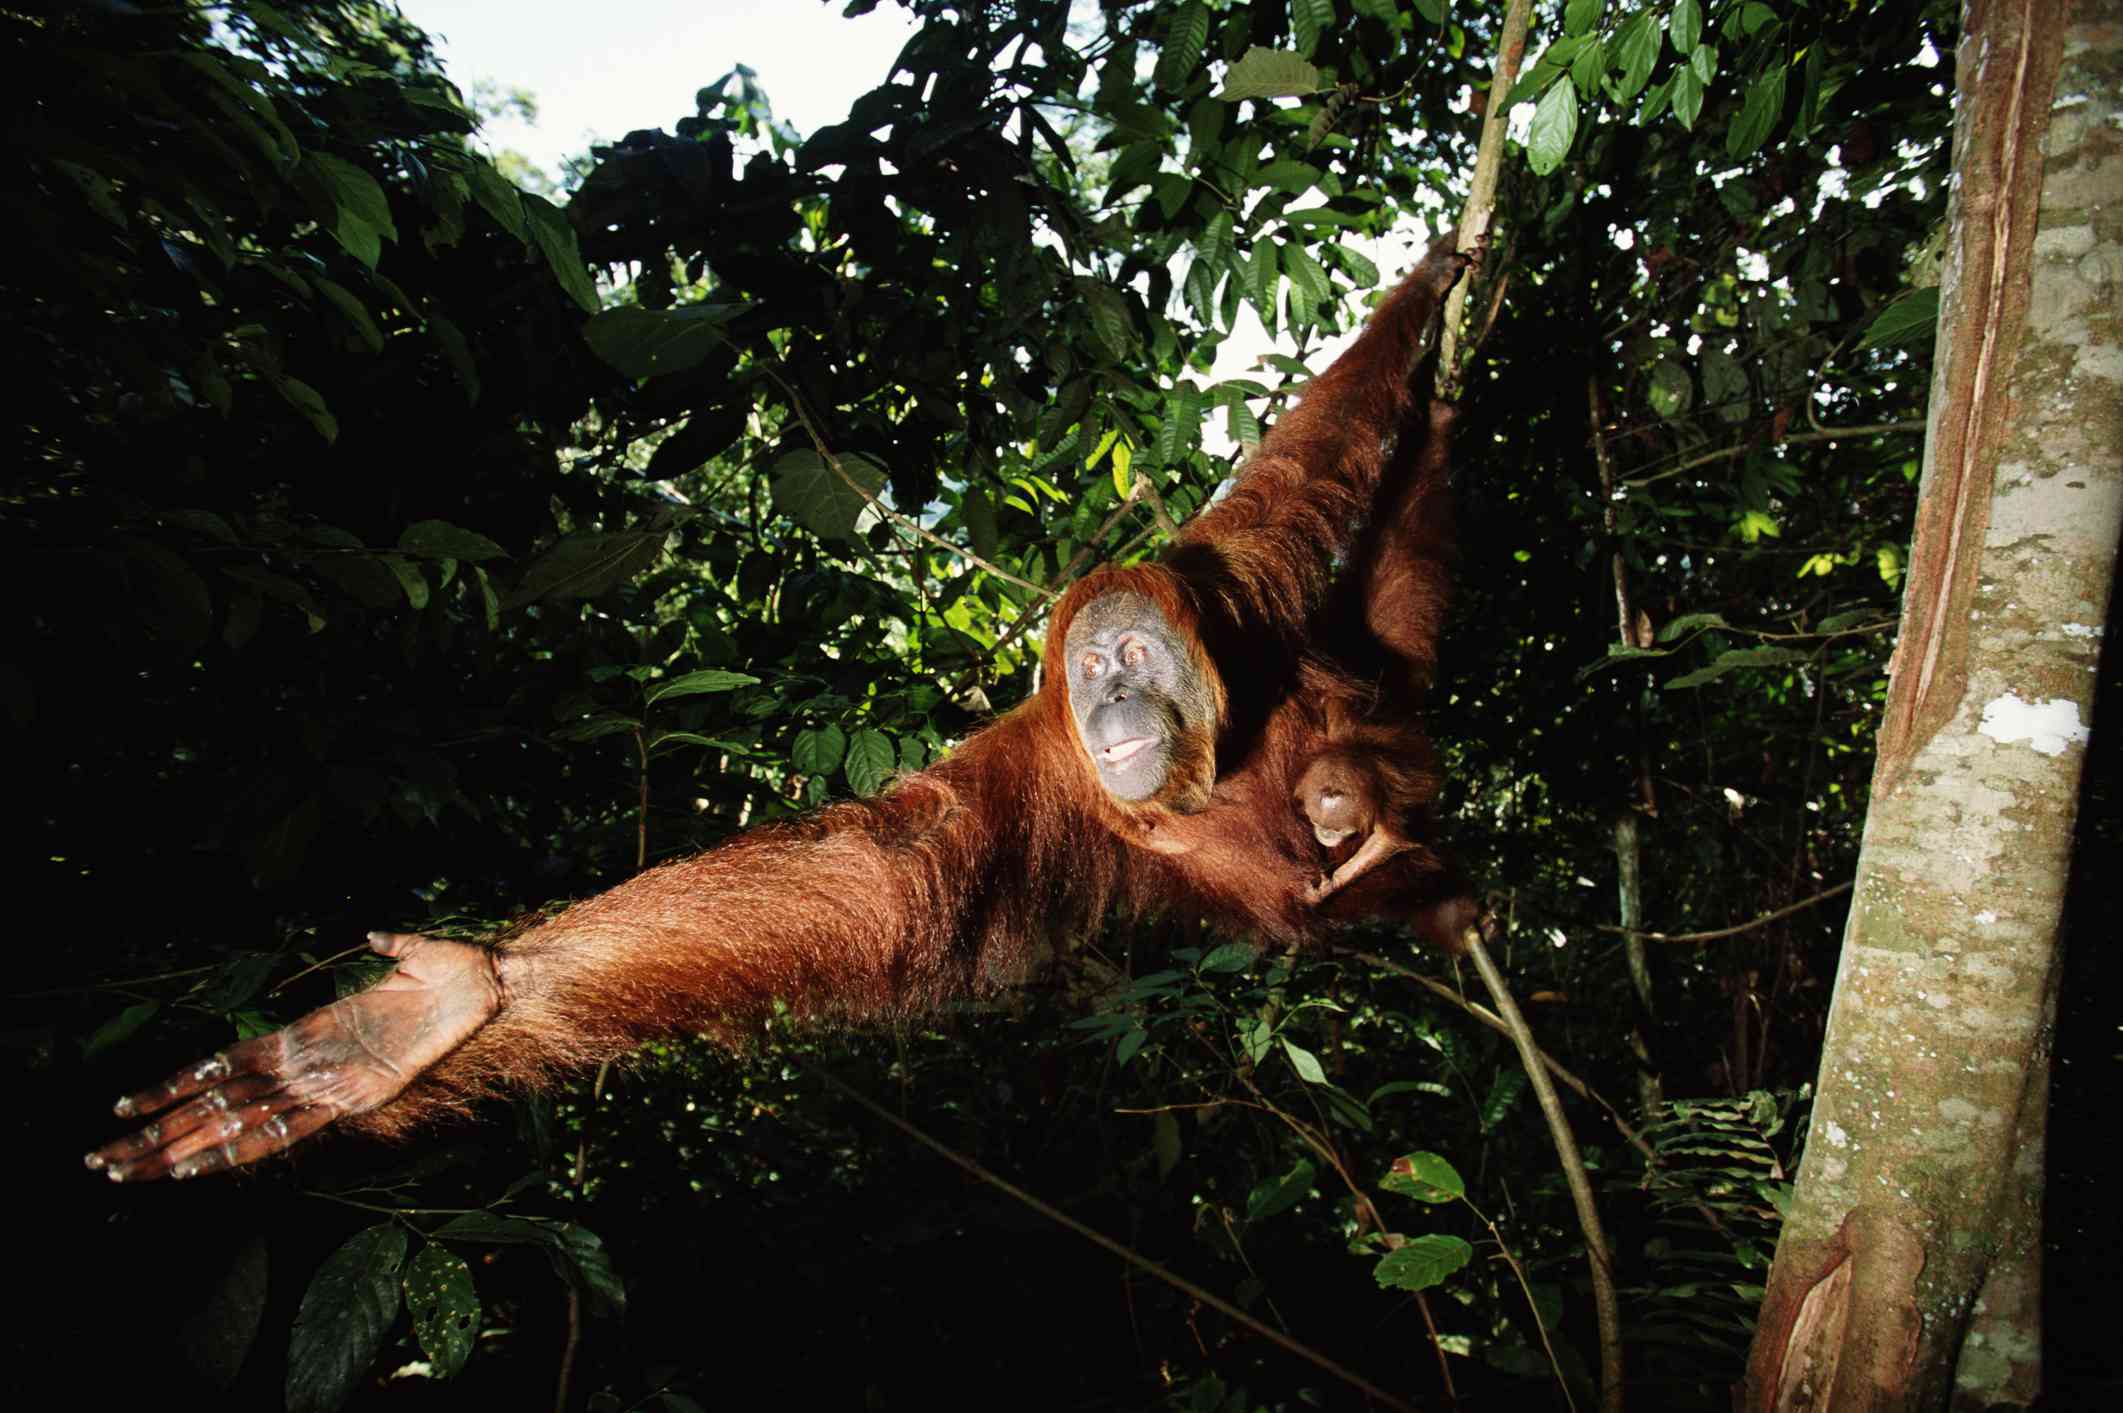 Orangután hembra extendiendo el brazo con su bebé